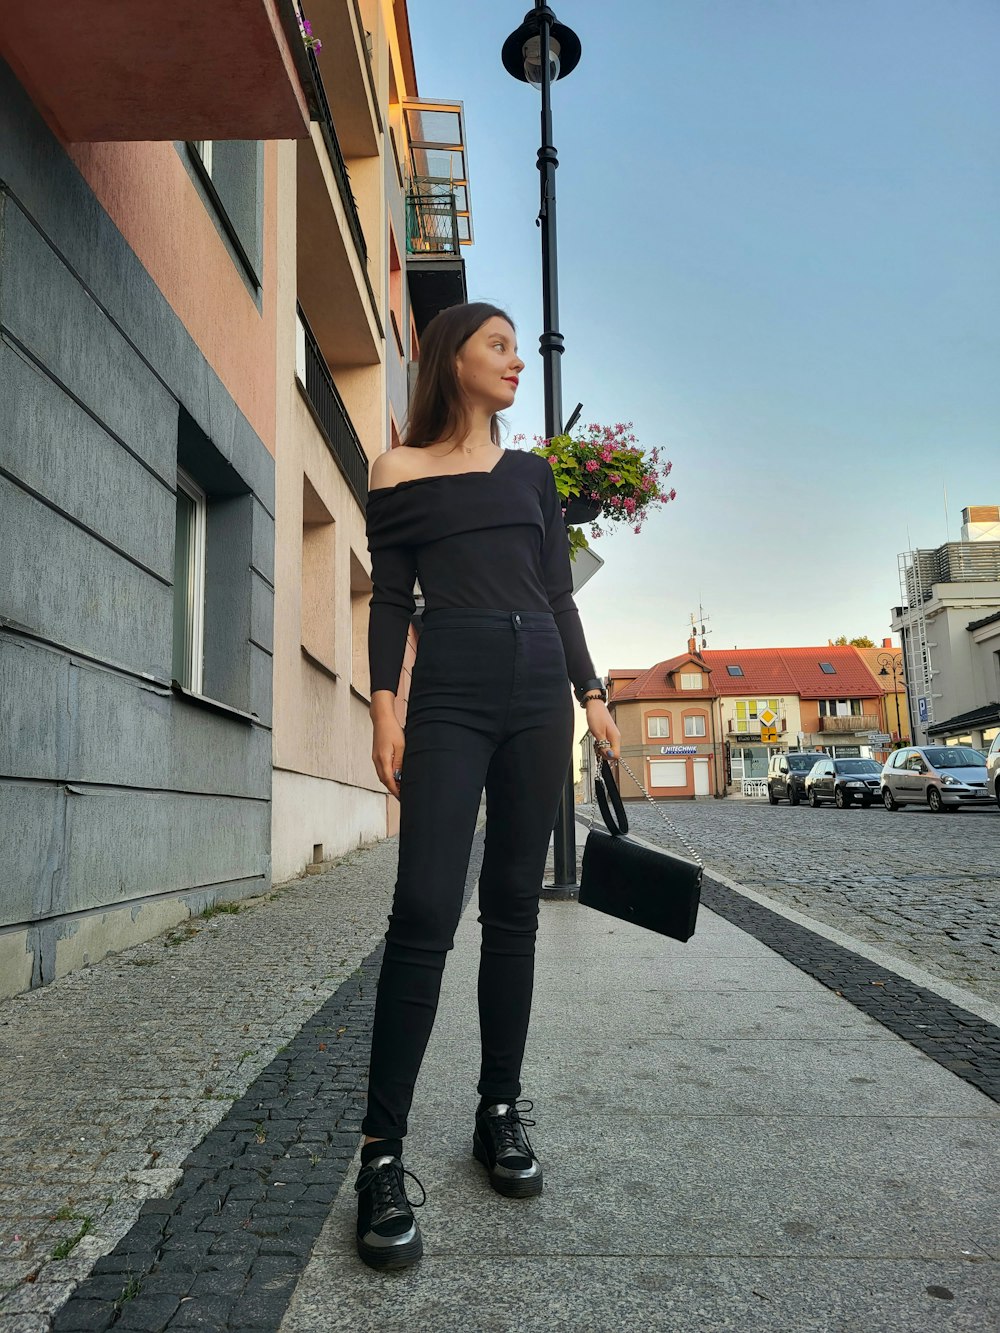 Une femme en noir marche dans la rue